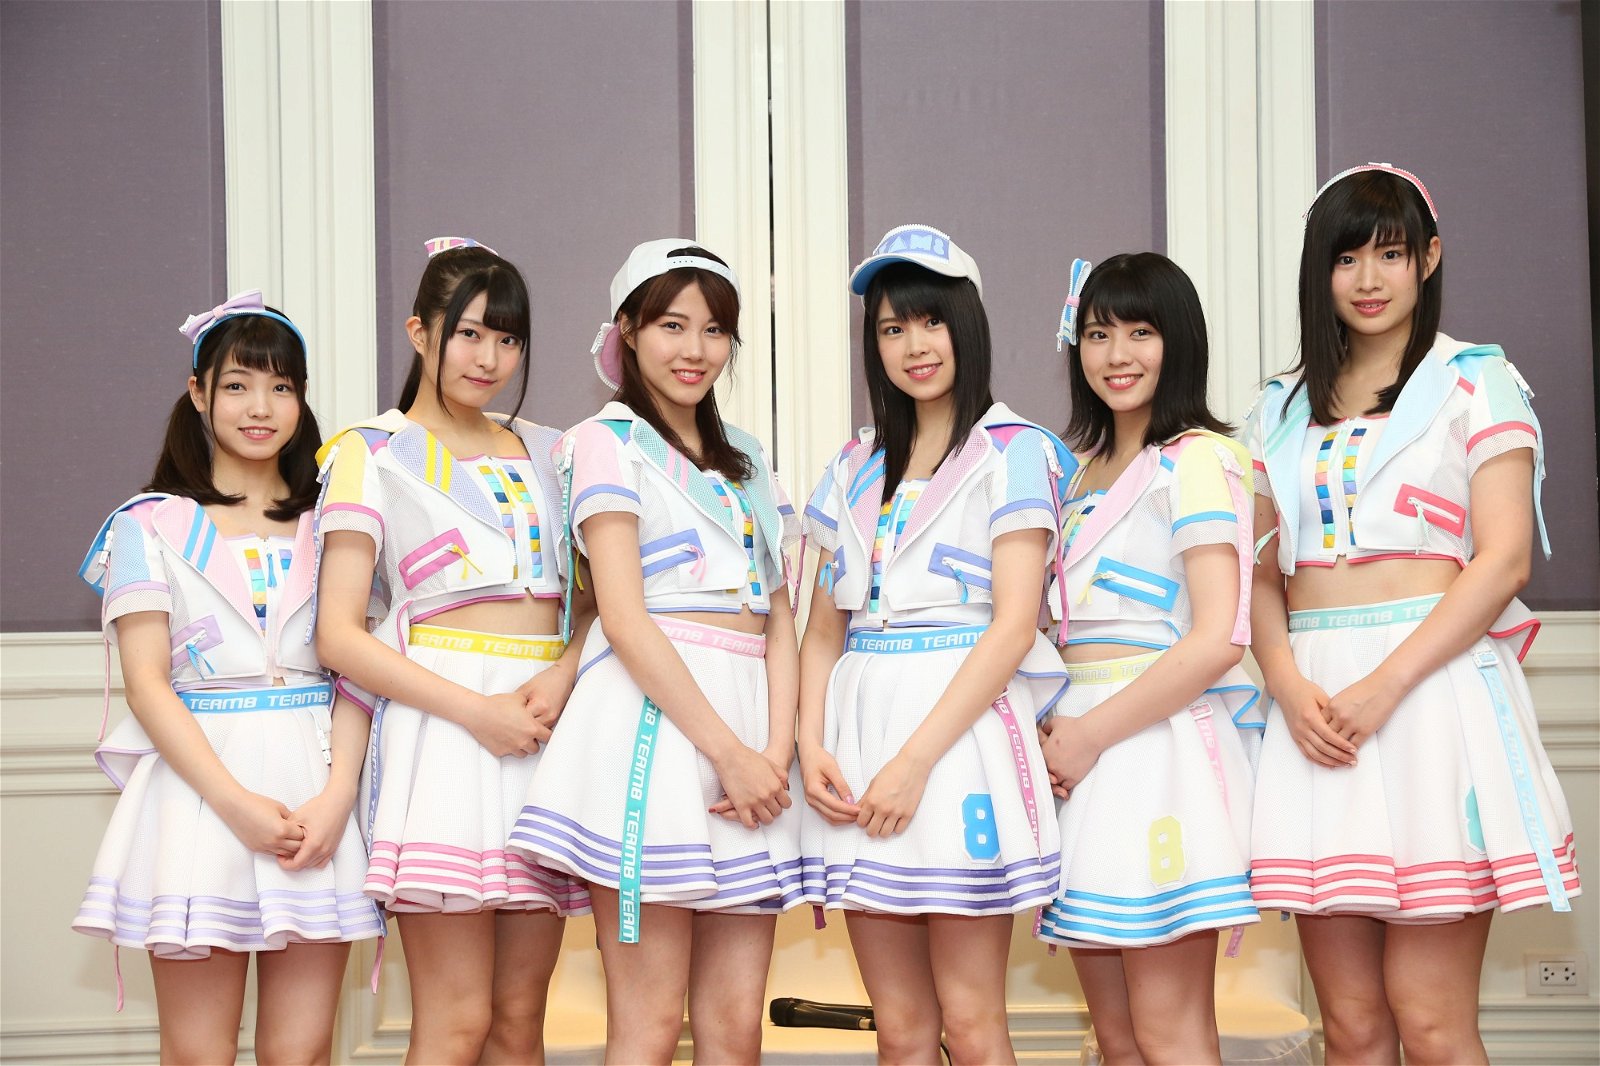 AKB48表示想与Juice=Juice合作，盼能互相取经学习。